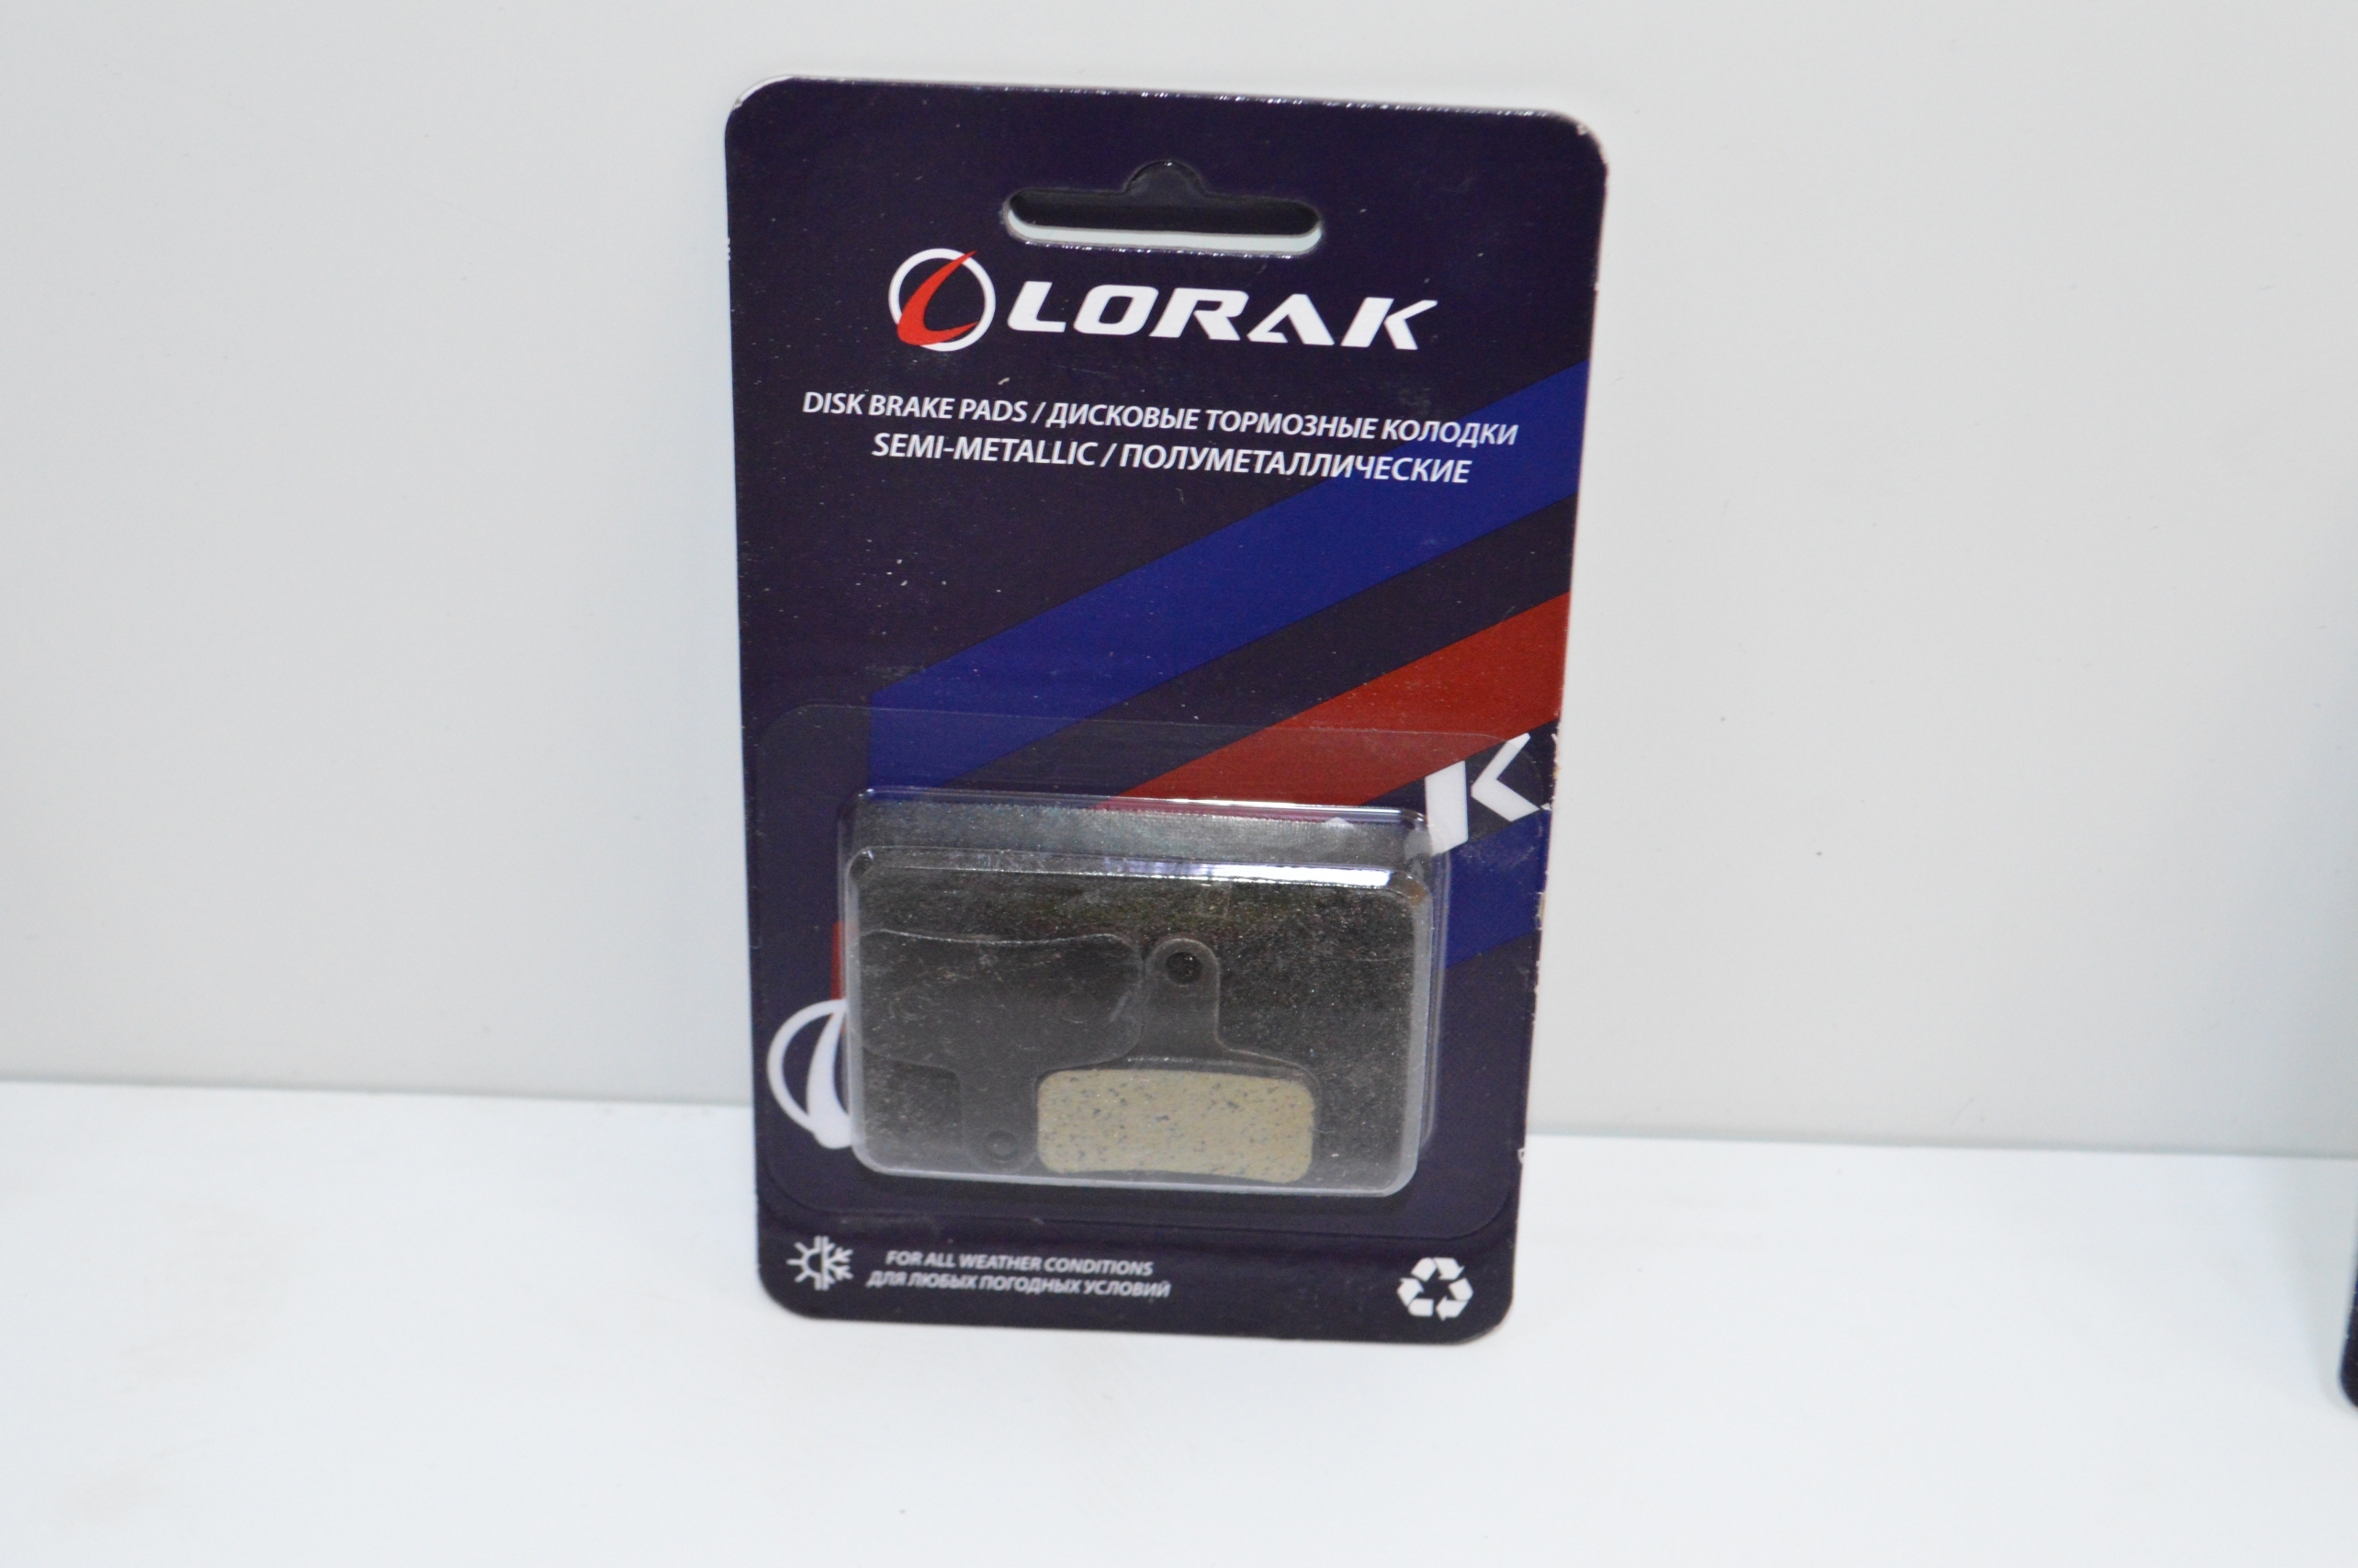 Колодка для диска Lorak P-23, код 40950